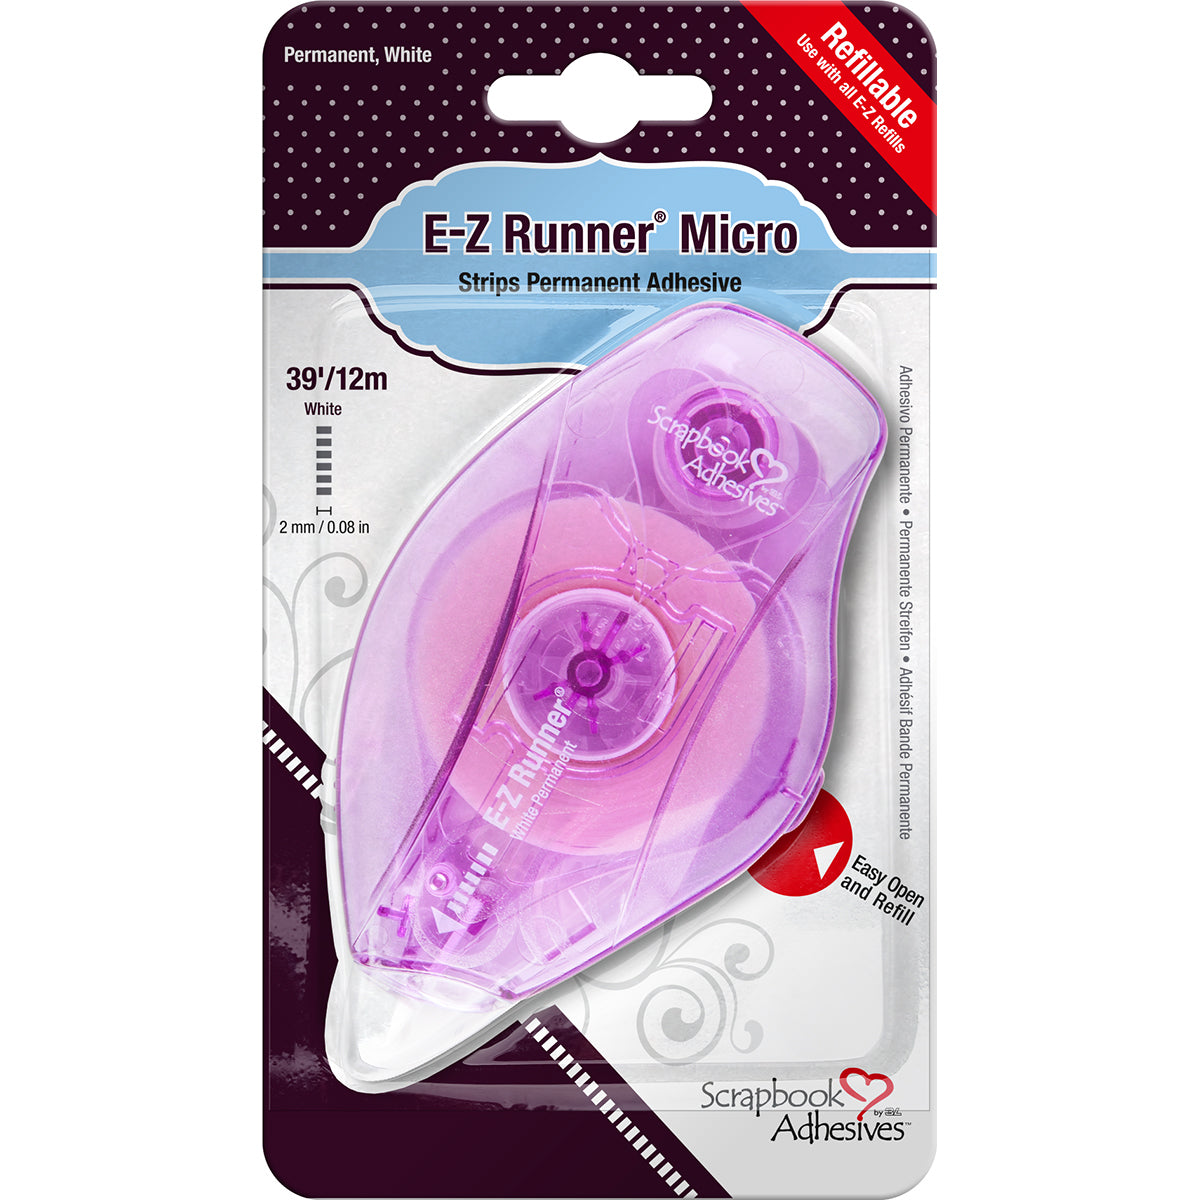 E-Z Runner Micro Adhesive